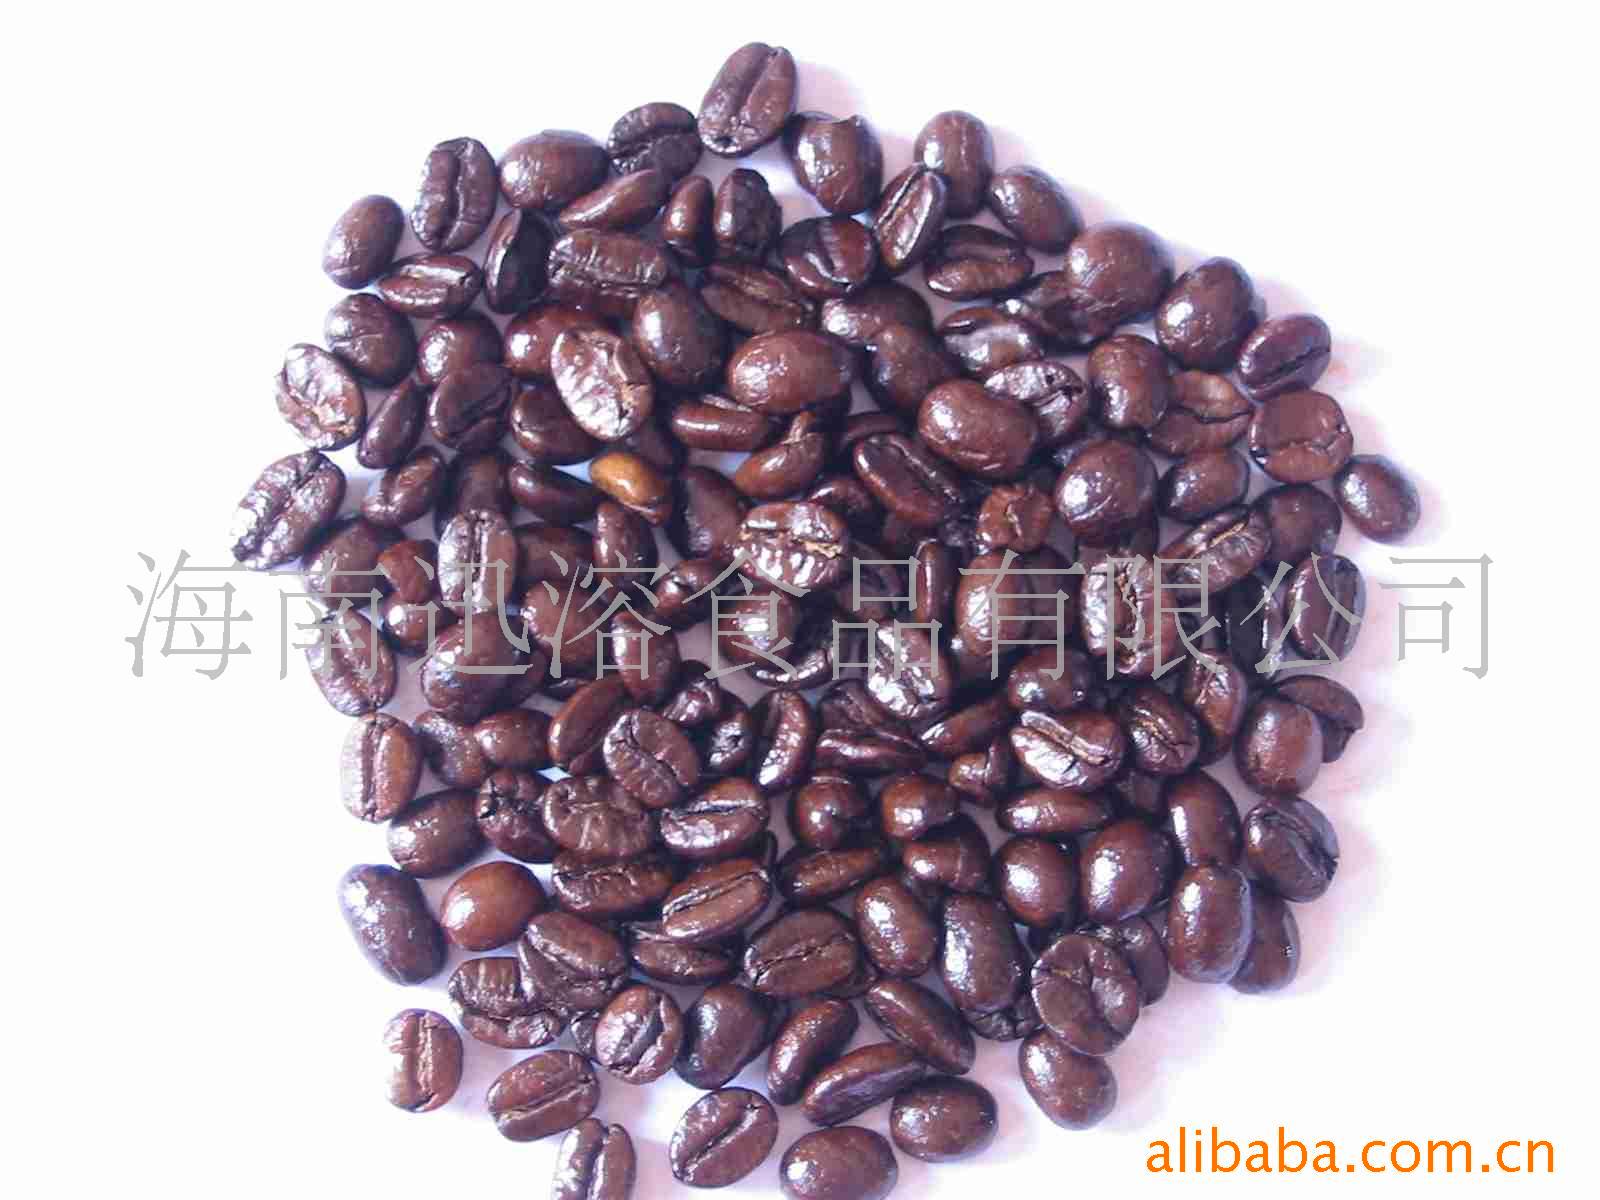 迅溶系列木炭烘焙浓香咖啡豆--炭烧咖啡豆(图)信息